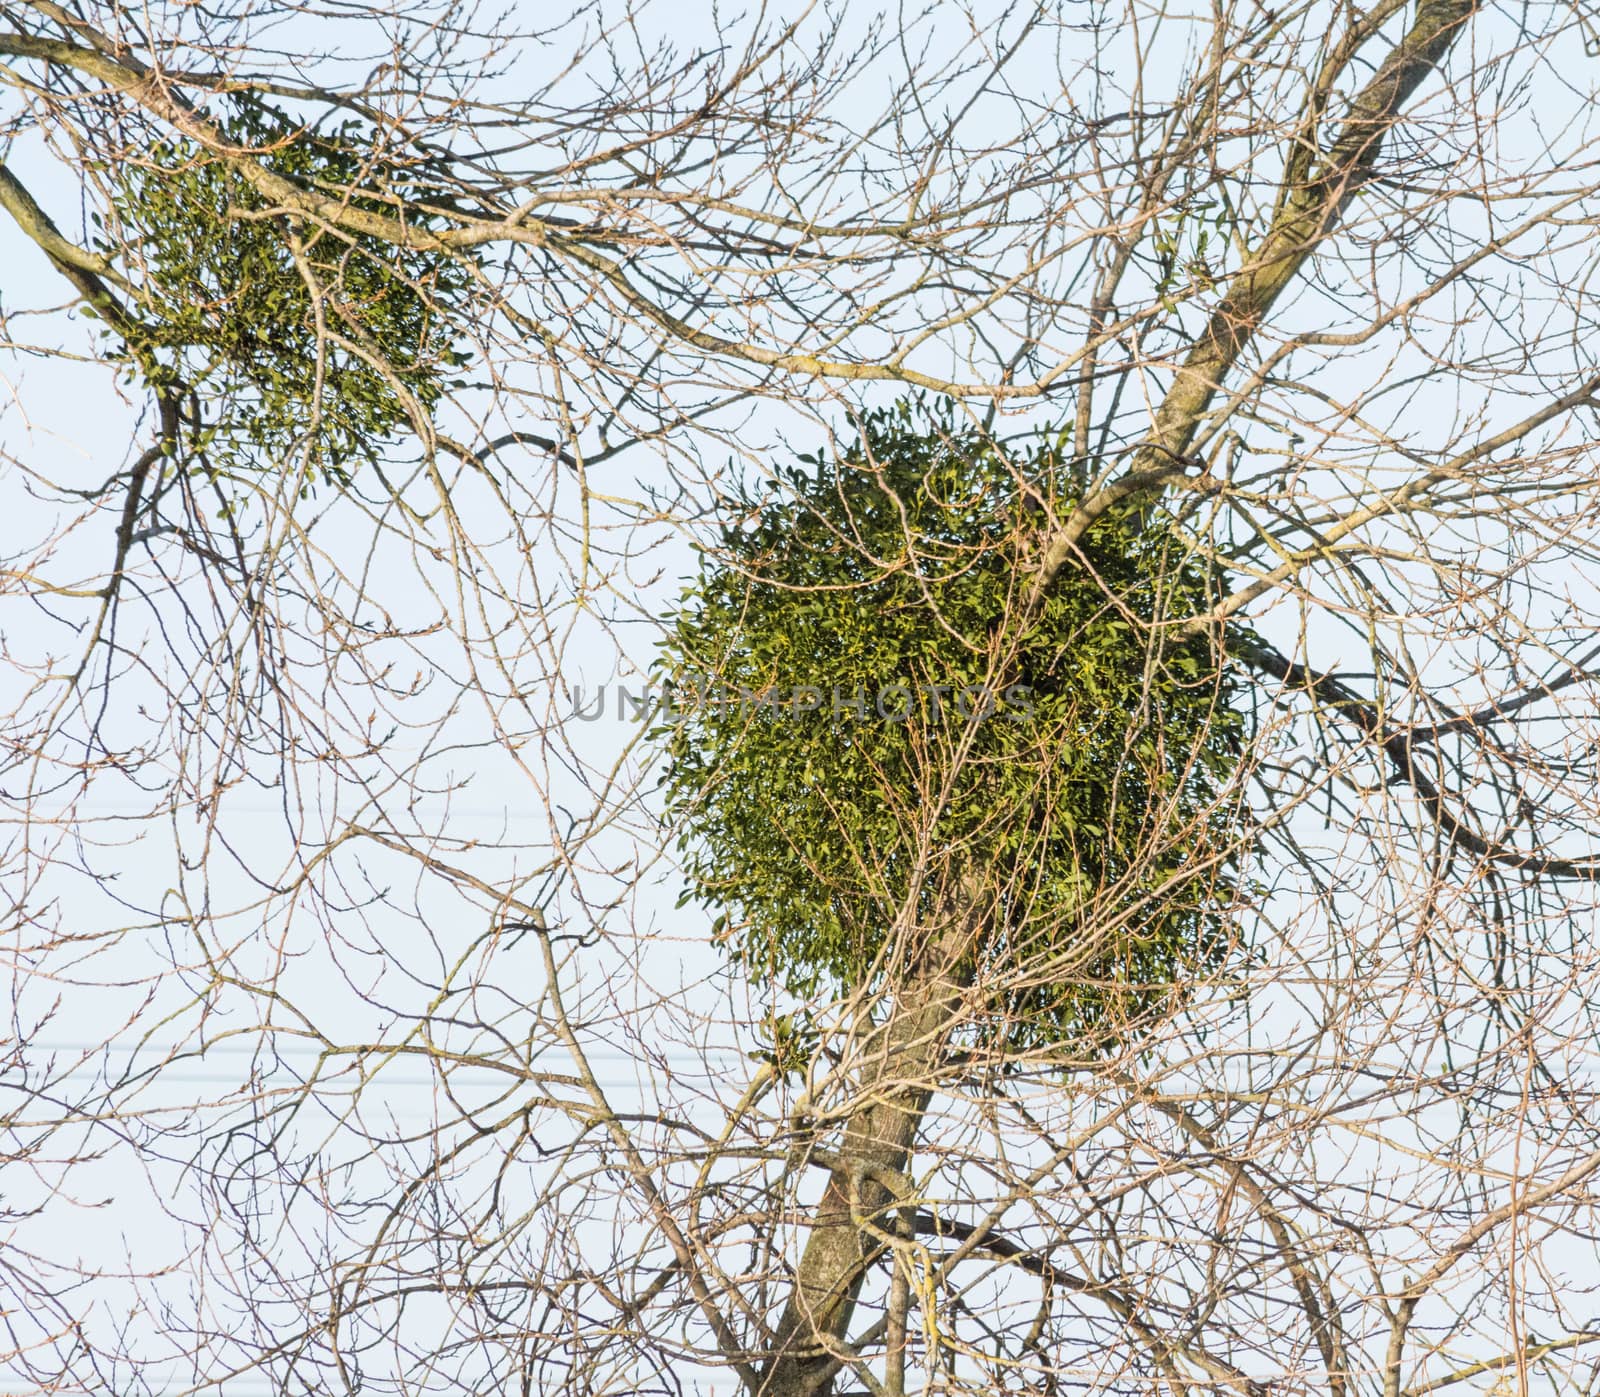 balls of mistletoe grow in a tree